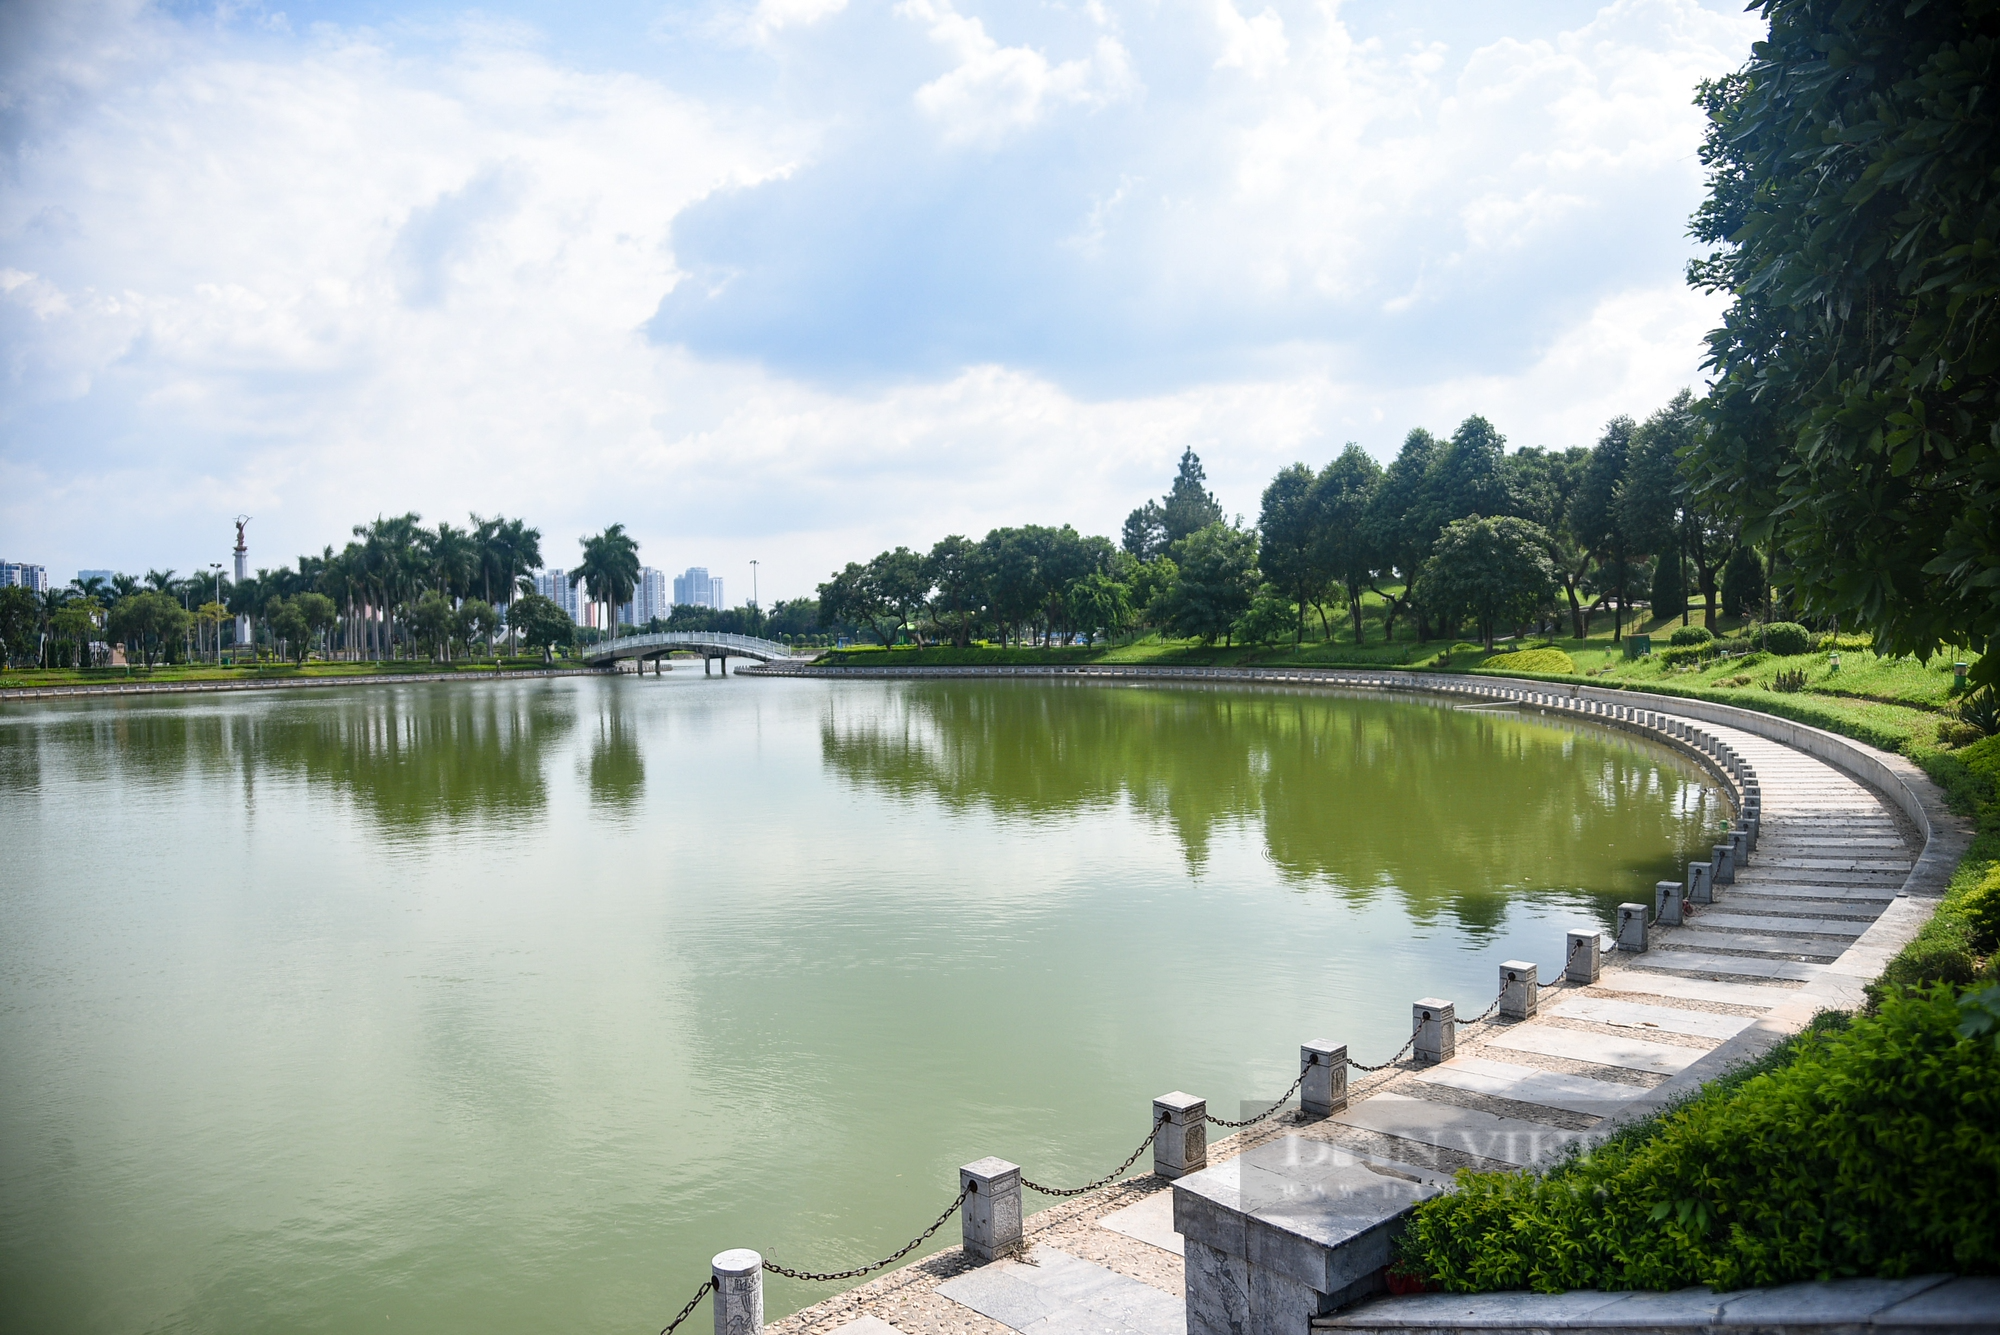 Hình ảnh công viên hiện đại nhất Hà Nội một thời, sau hơn 10 năm đưa vào sử dụng  - Ảnh 14.